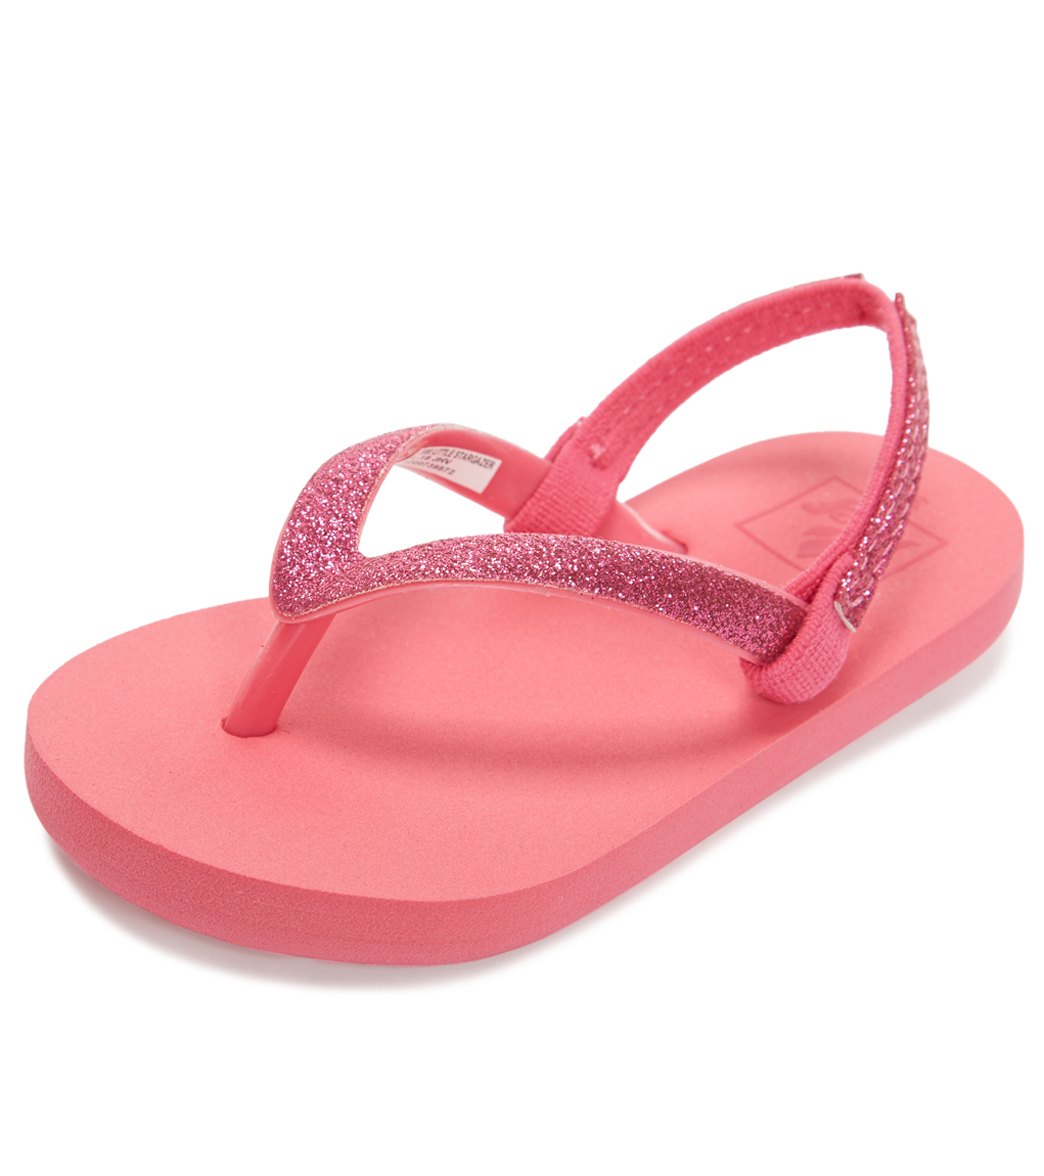 Reef Girls' Little Stargazer Flip Flop - Hot Pink 5/6 - Swimoutlet.com